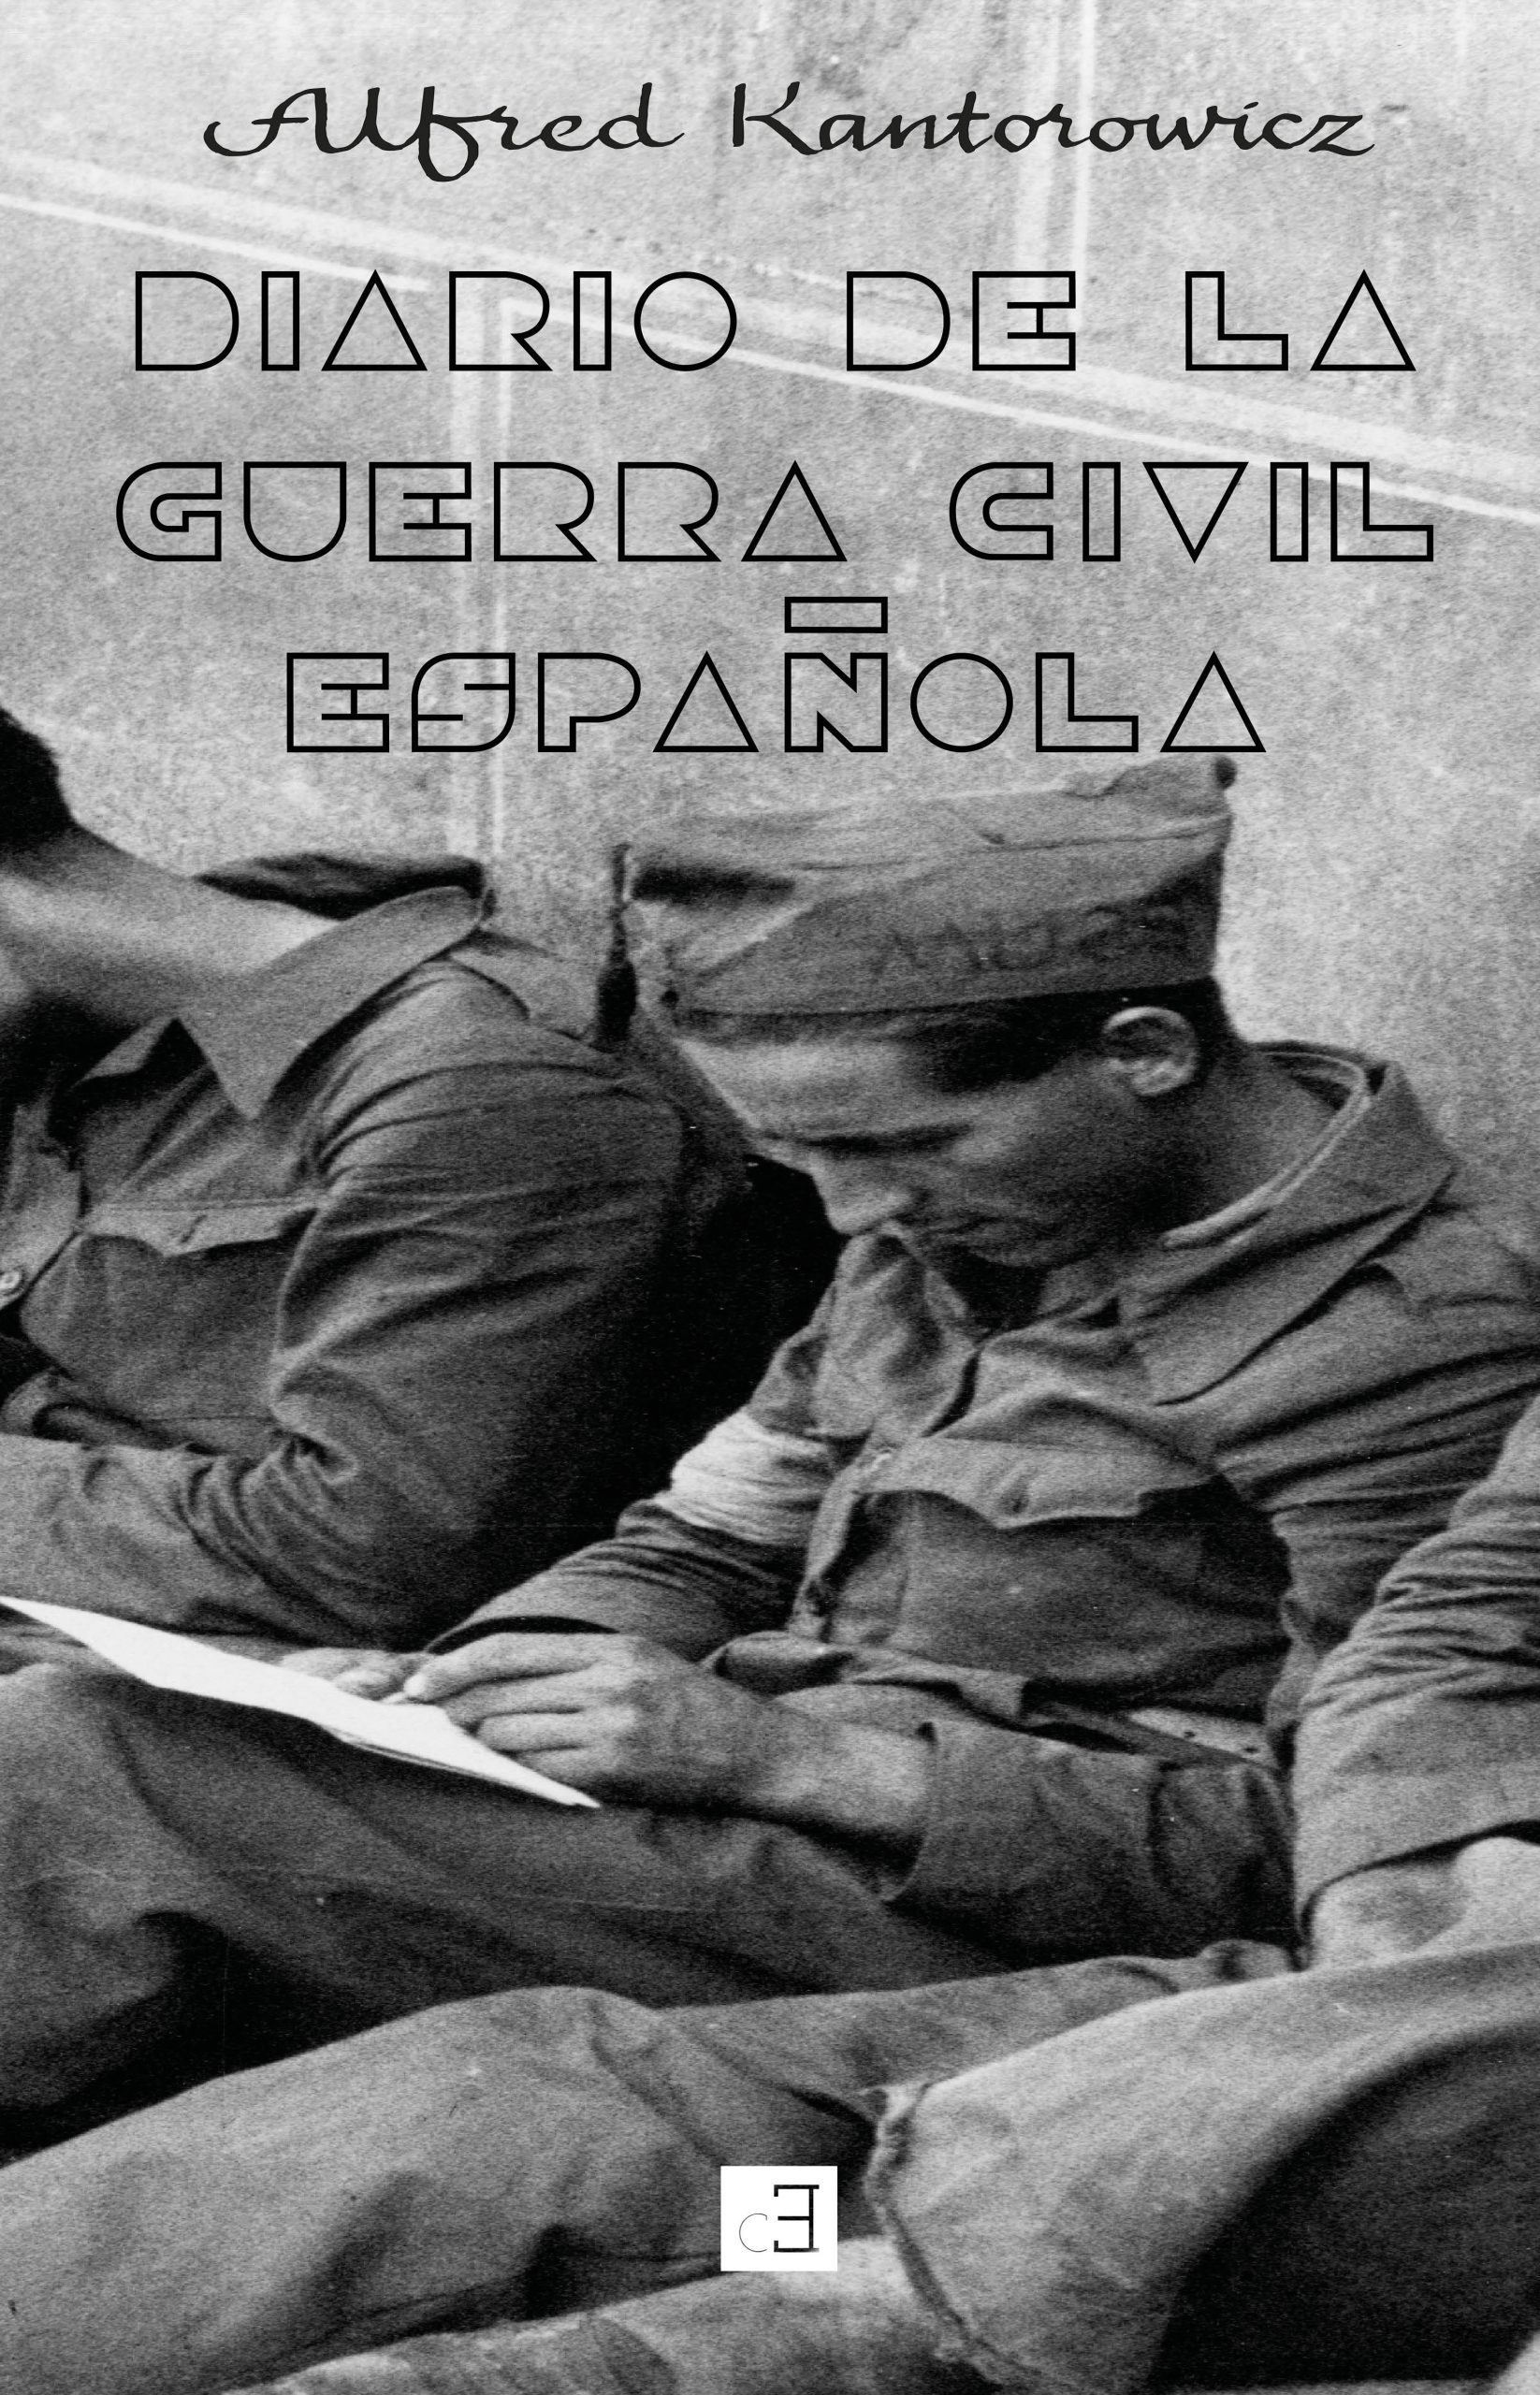 DIARIO DE LA GUERRA CIVIL ESPAÑOLA - Alfred Kantorowicz